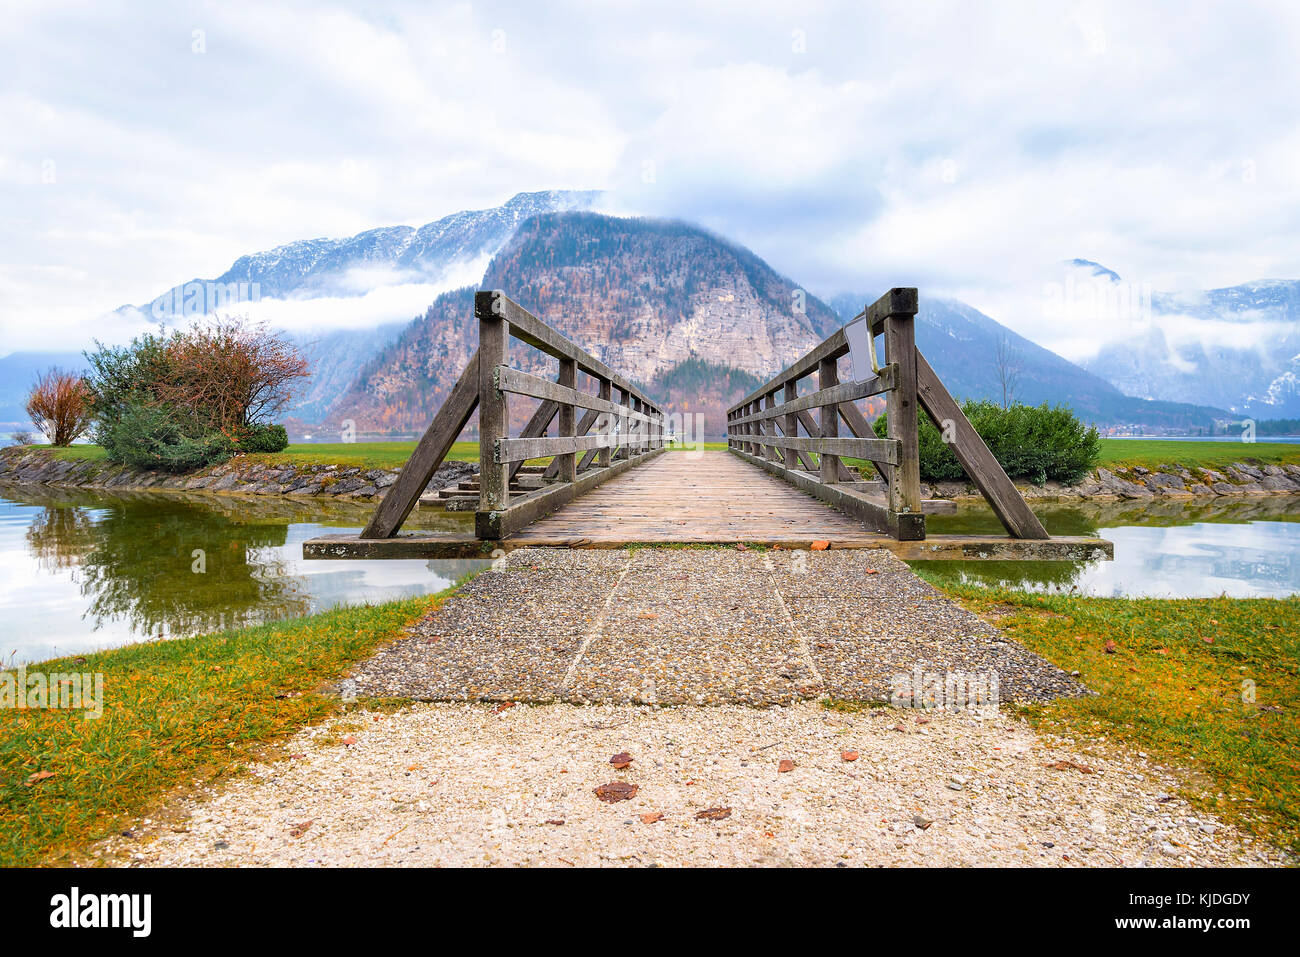 Scenario idilliaco con un vecchio rustico ponte sul lago hallstatter, alla fine del quale i fedeli laici i monti Dachstein, dall' Austria Foto Stock